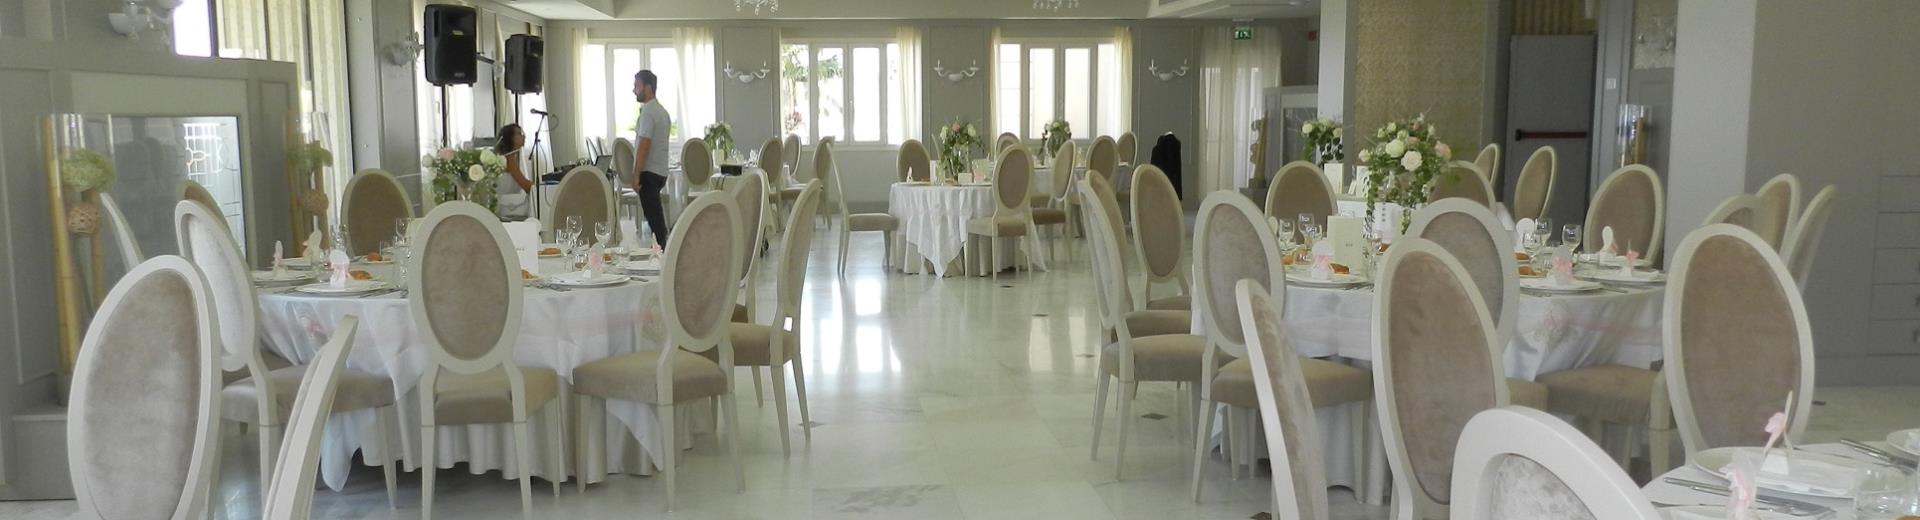 For your reception in Catanzaro Lido choose BW Plus Hotel Perla del Porto 4 stars